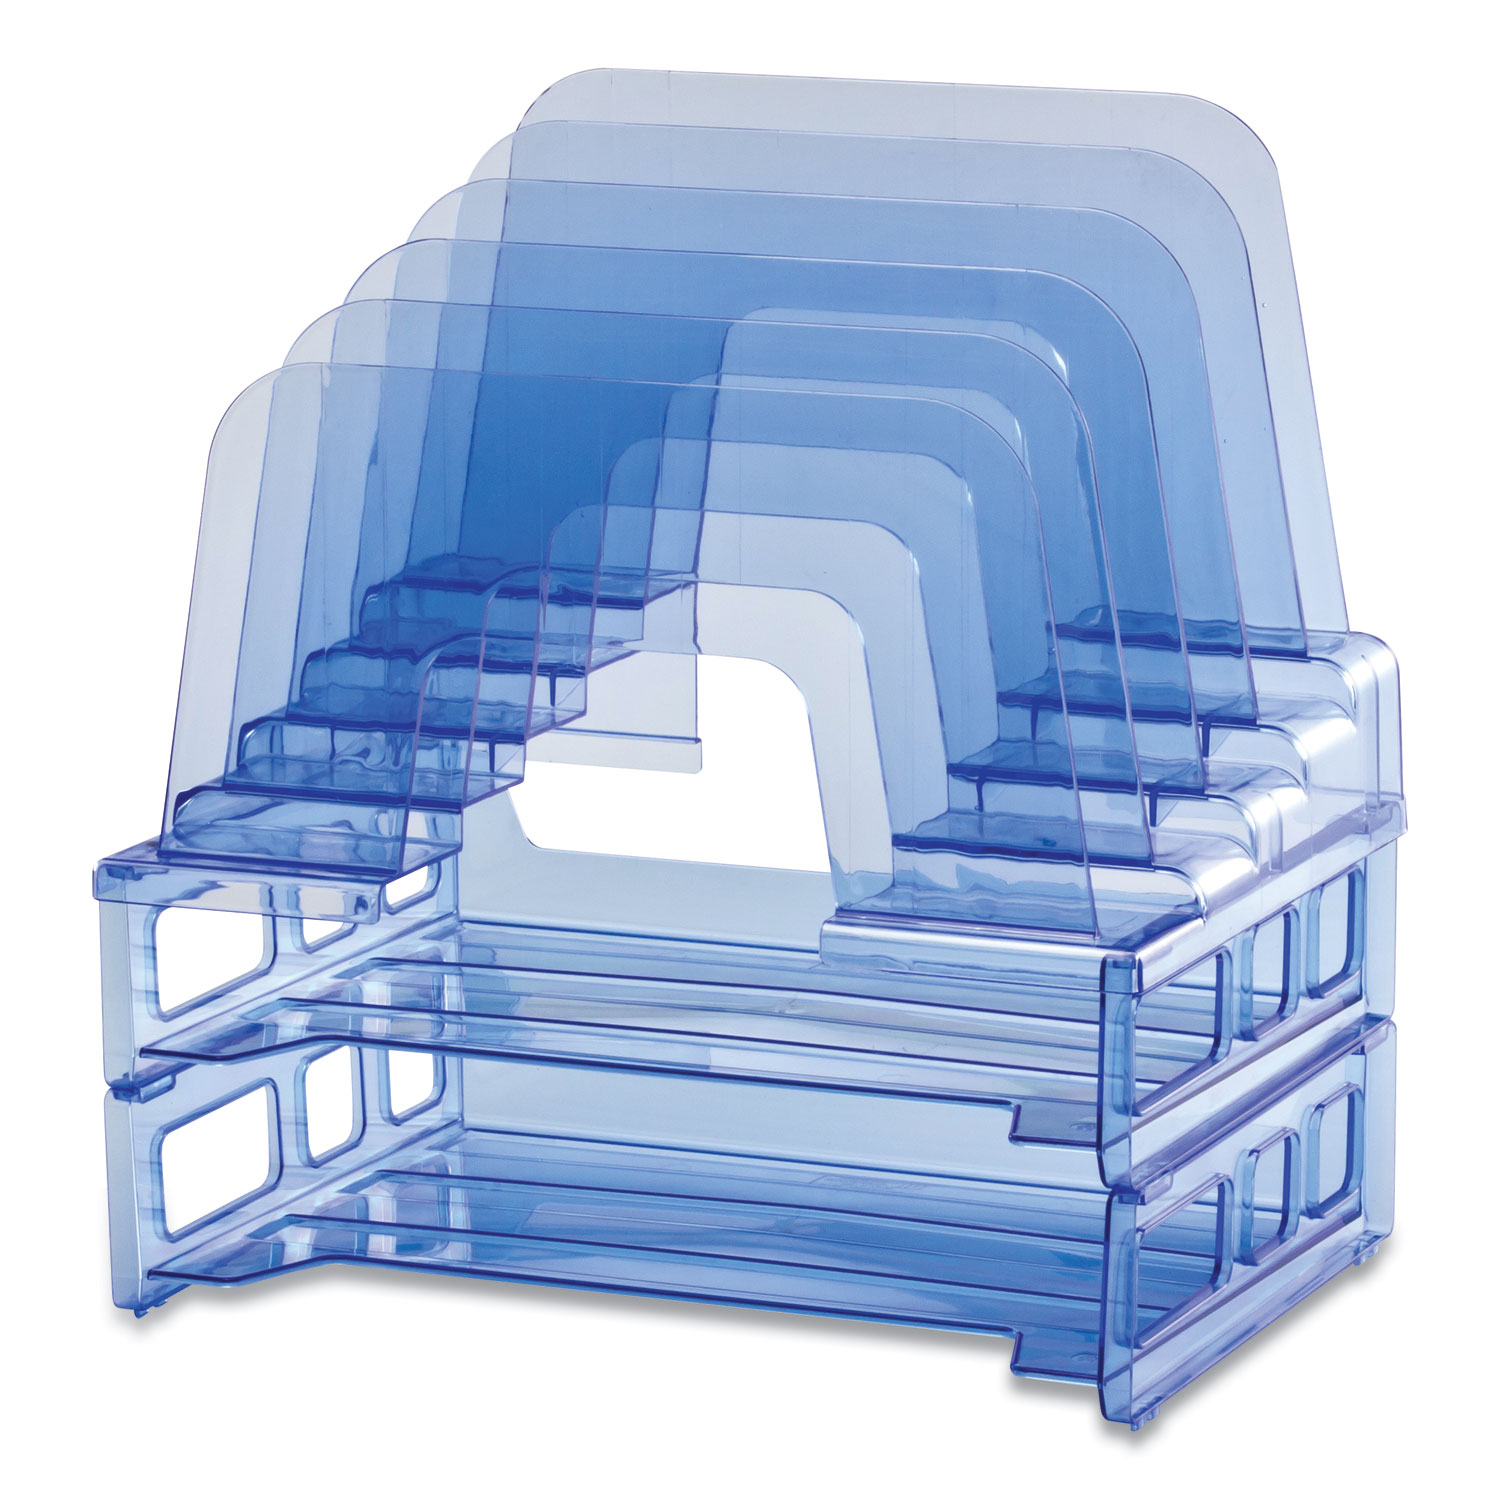 Officemate Blue Glacier Desktop File Organizer, 7 Sections, Letter-Size, 12.5 x 8.63 x 10.75, Blue